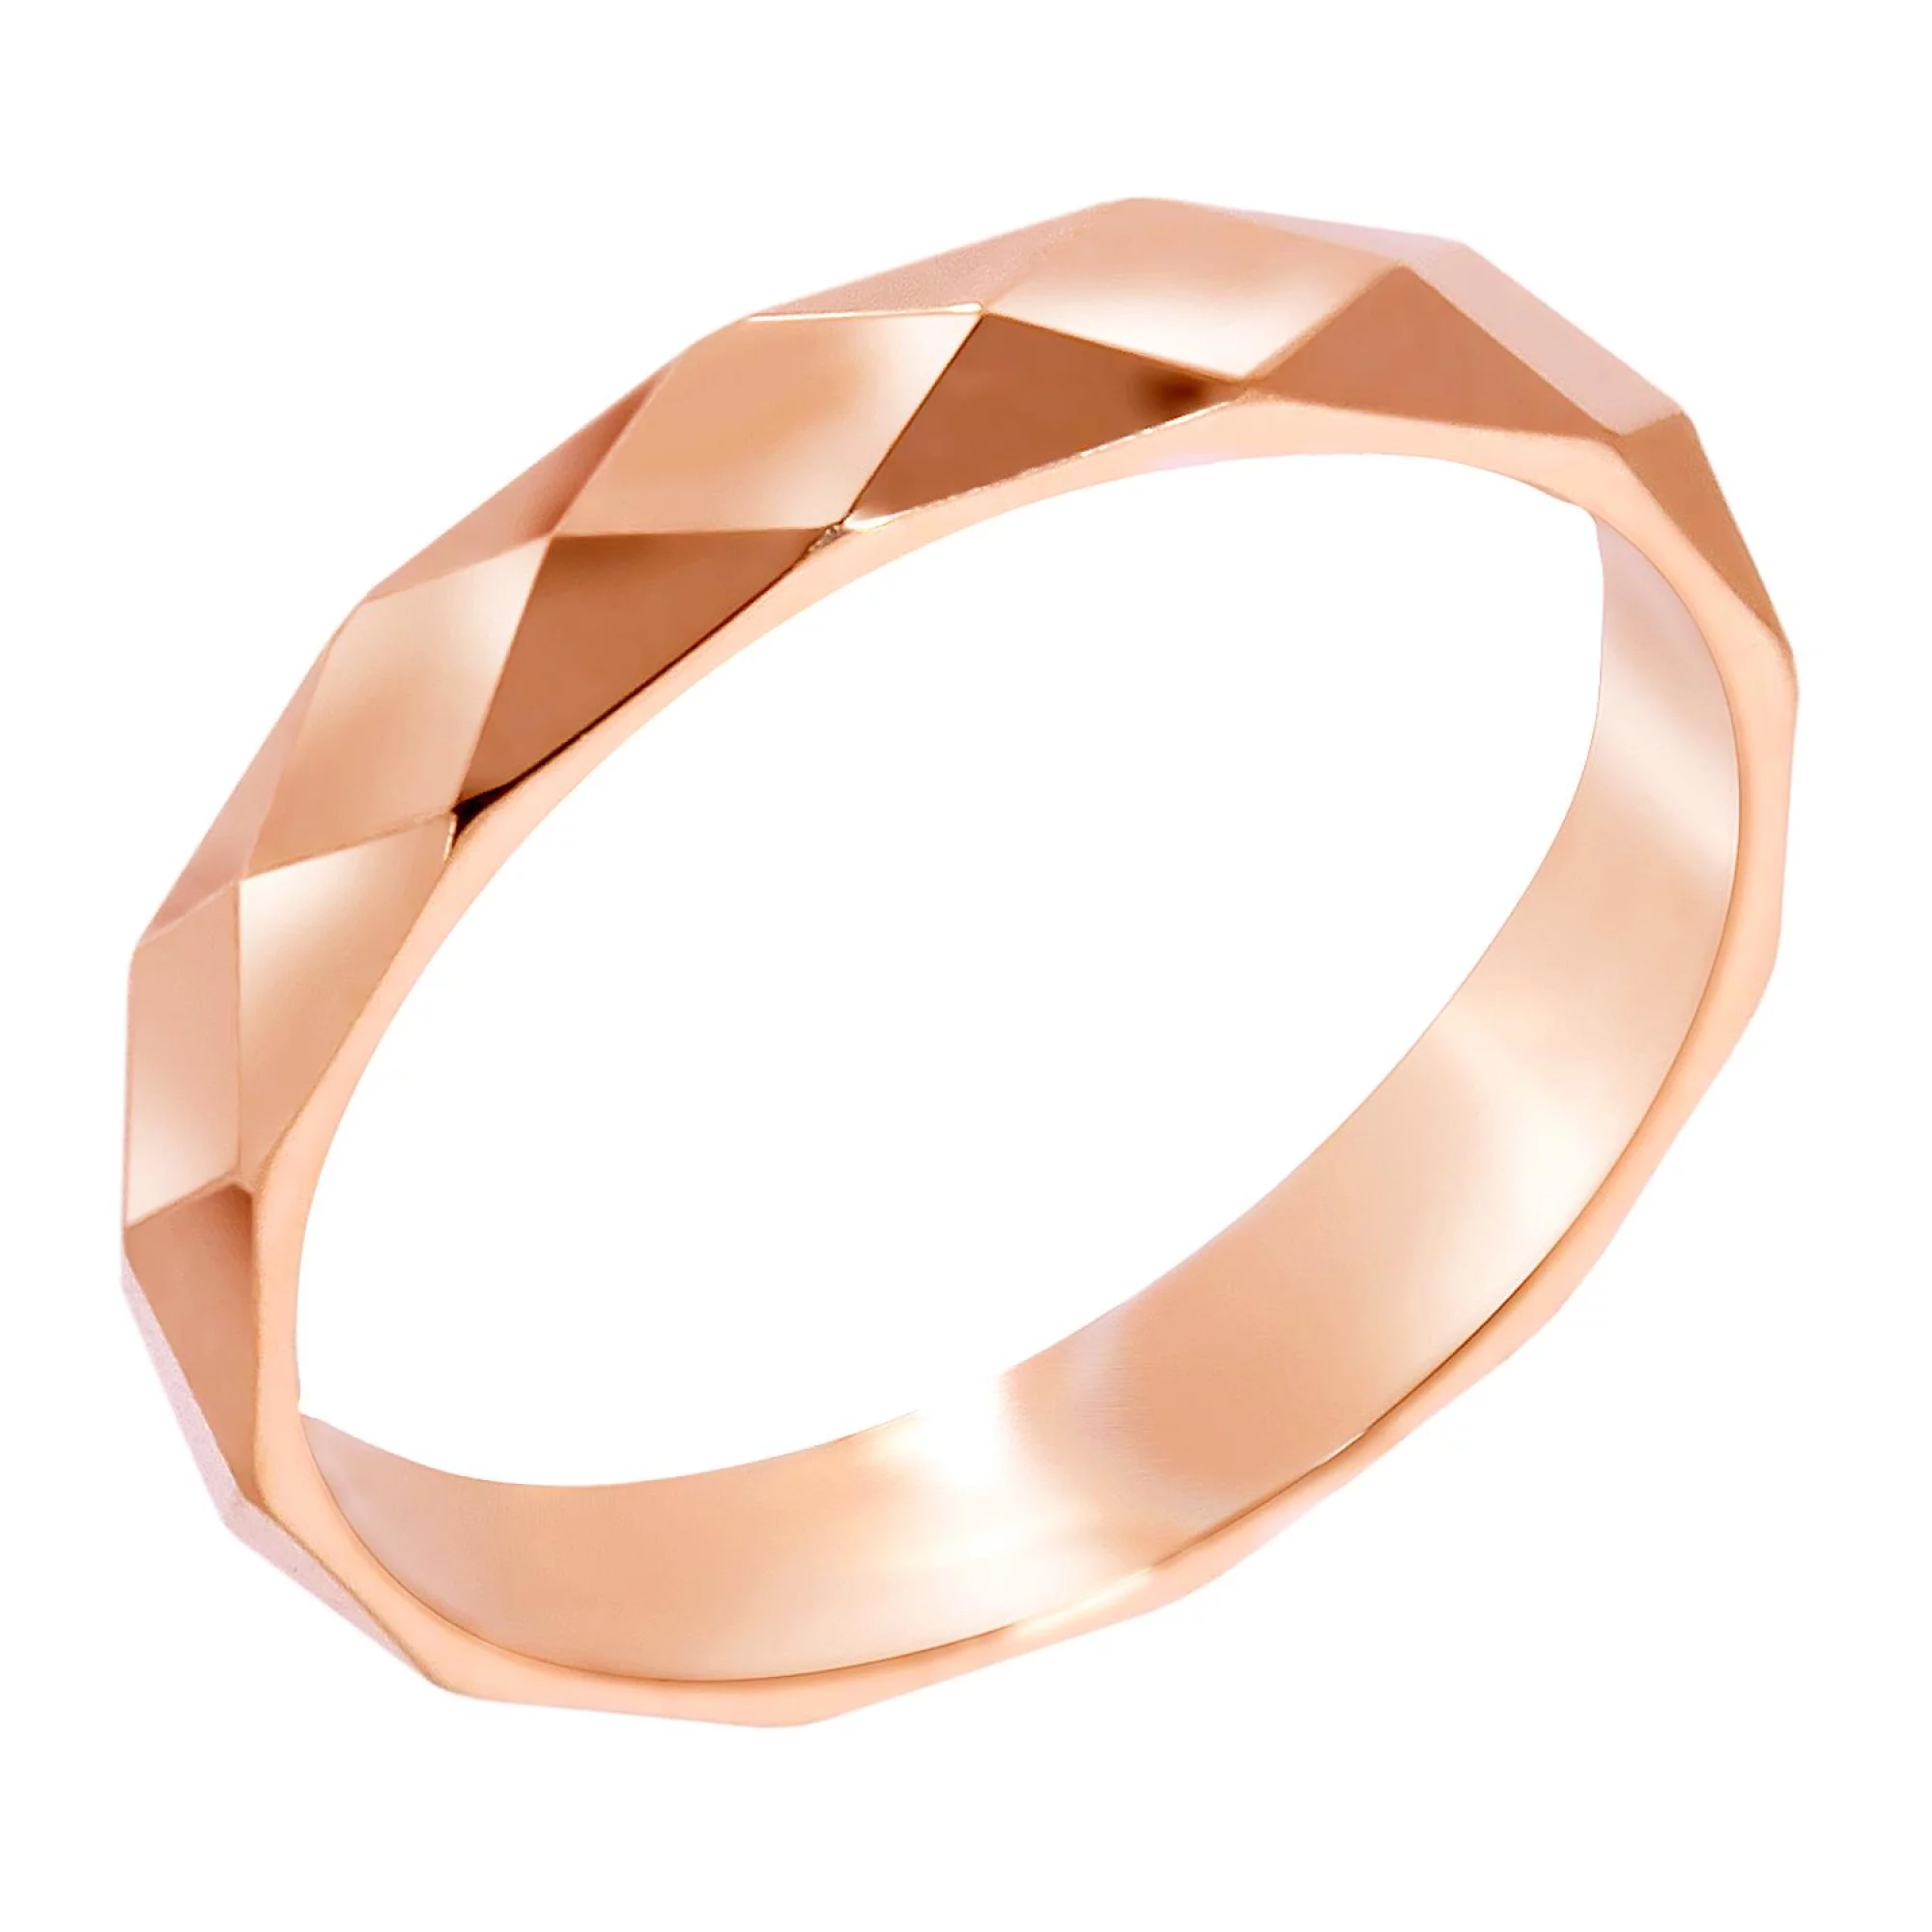 Обручальное кольцо из красного золота с гранями американка - 968100 – изображение 1